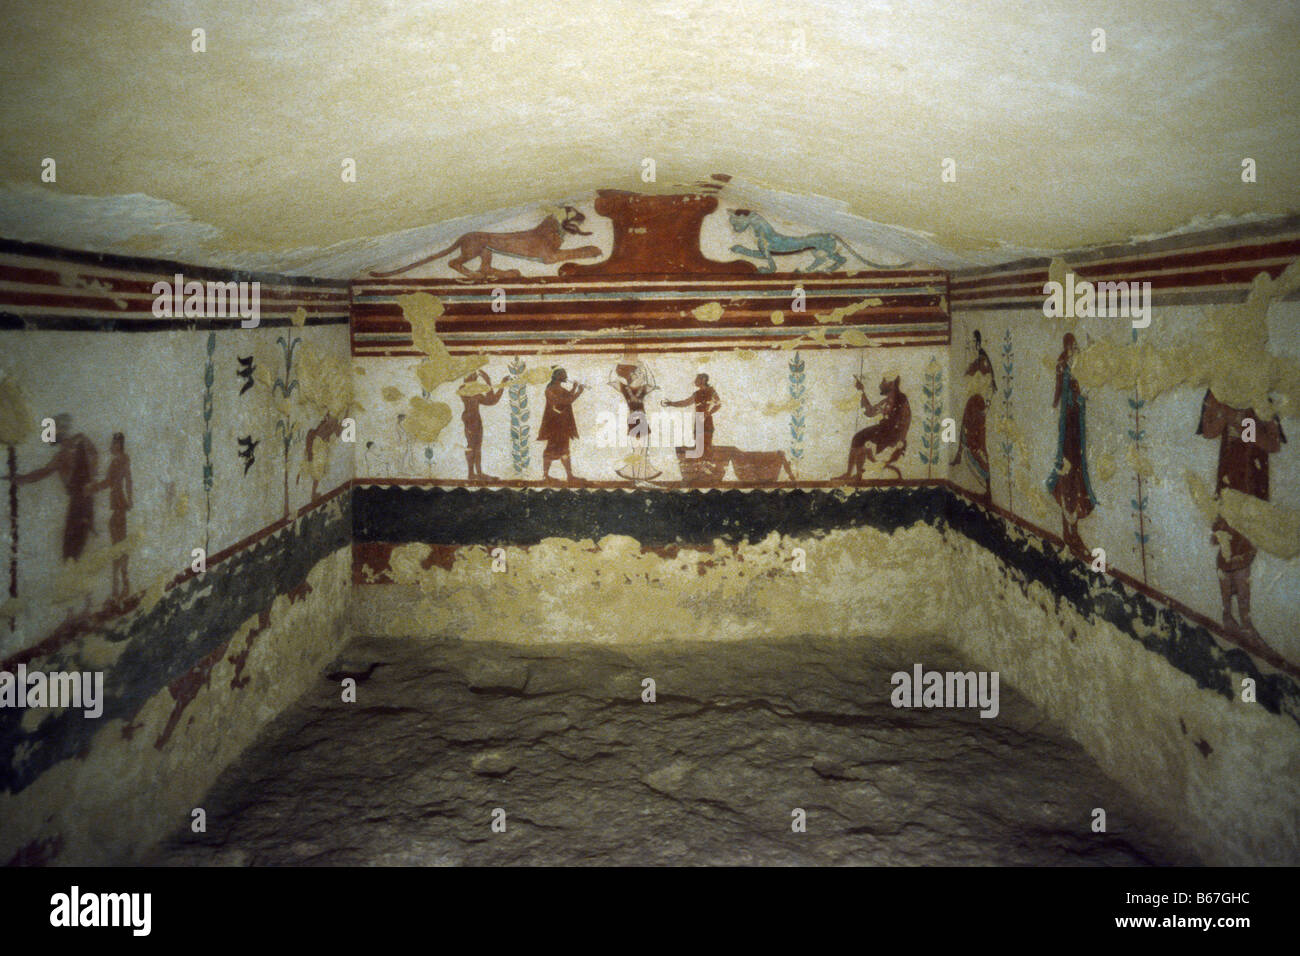 La tombe étrusque de Tarquinia Italie Latium de jongleurs (510 BC) Banque D'Images